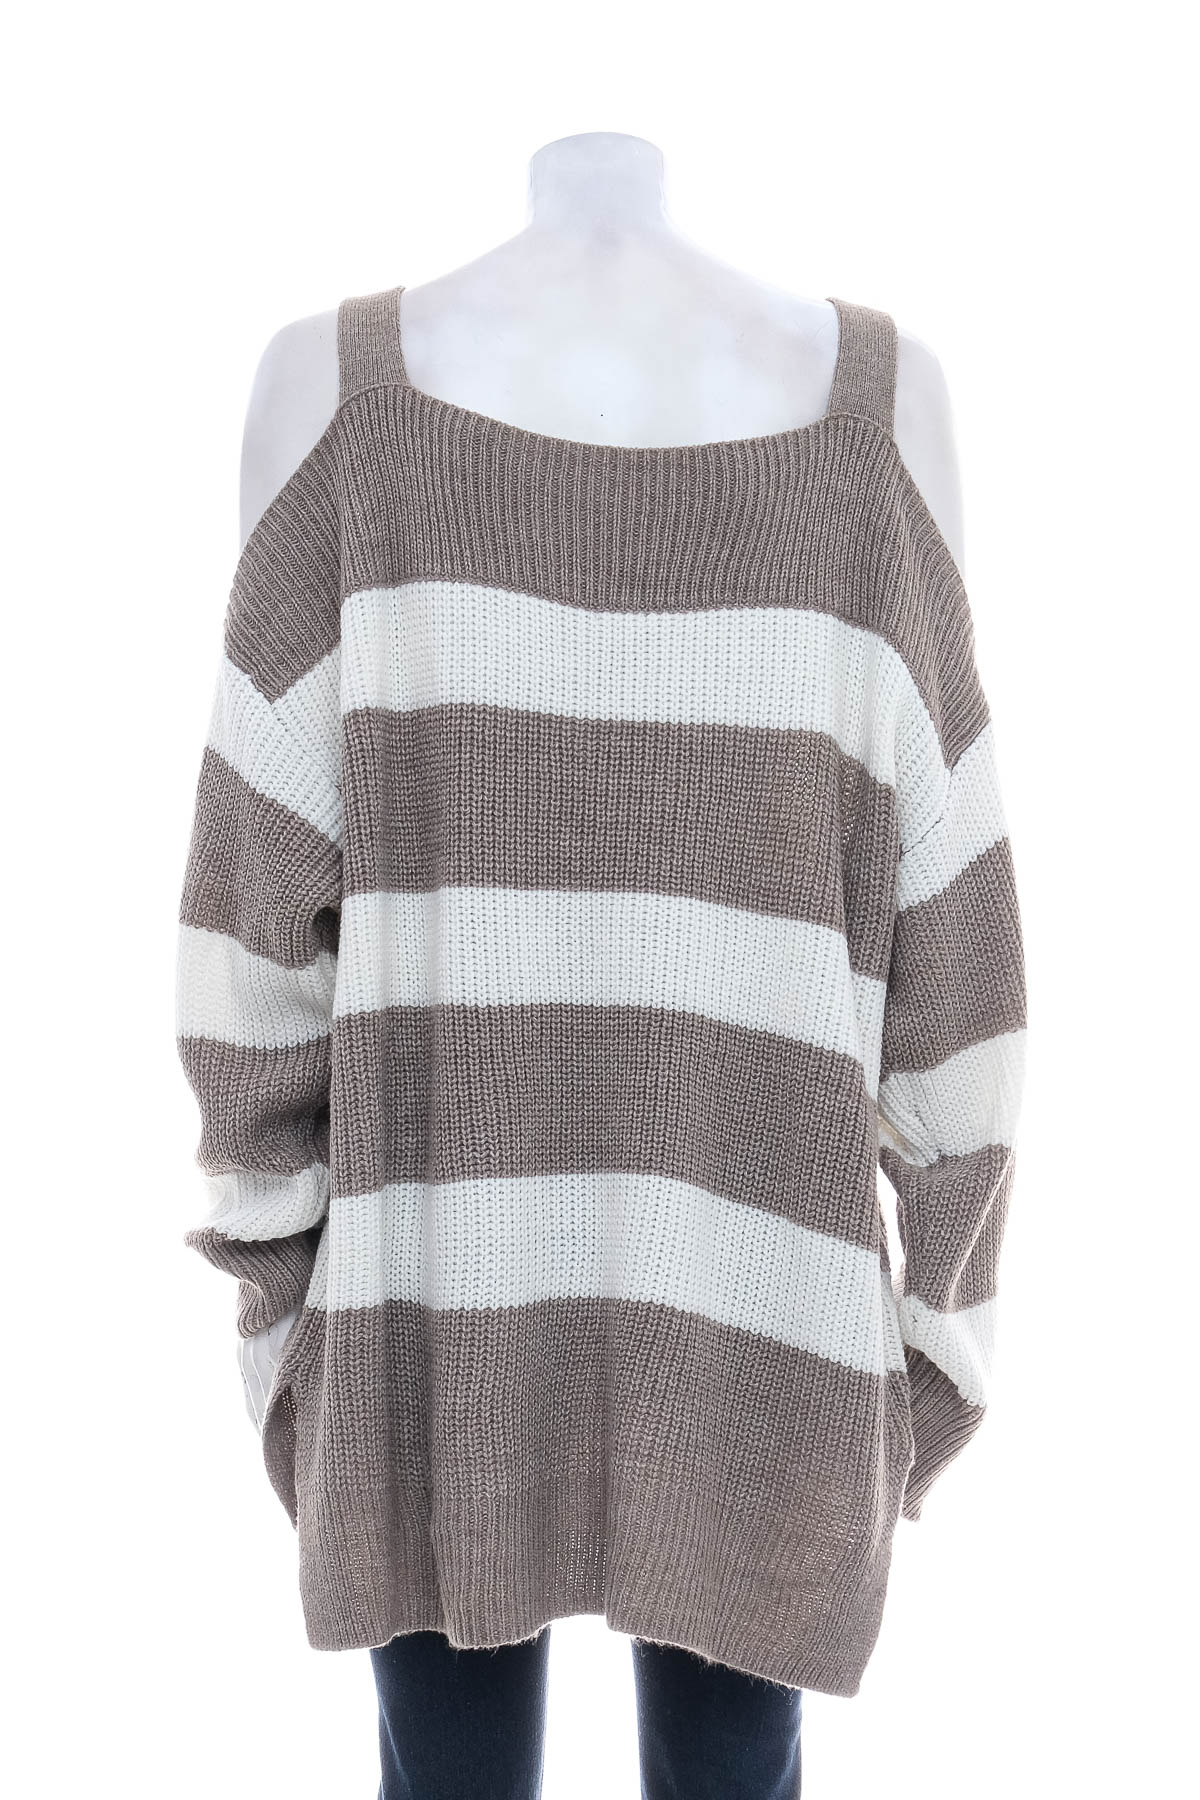 Women's sweater - Soho New York - 1